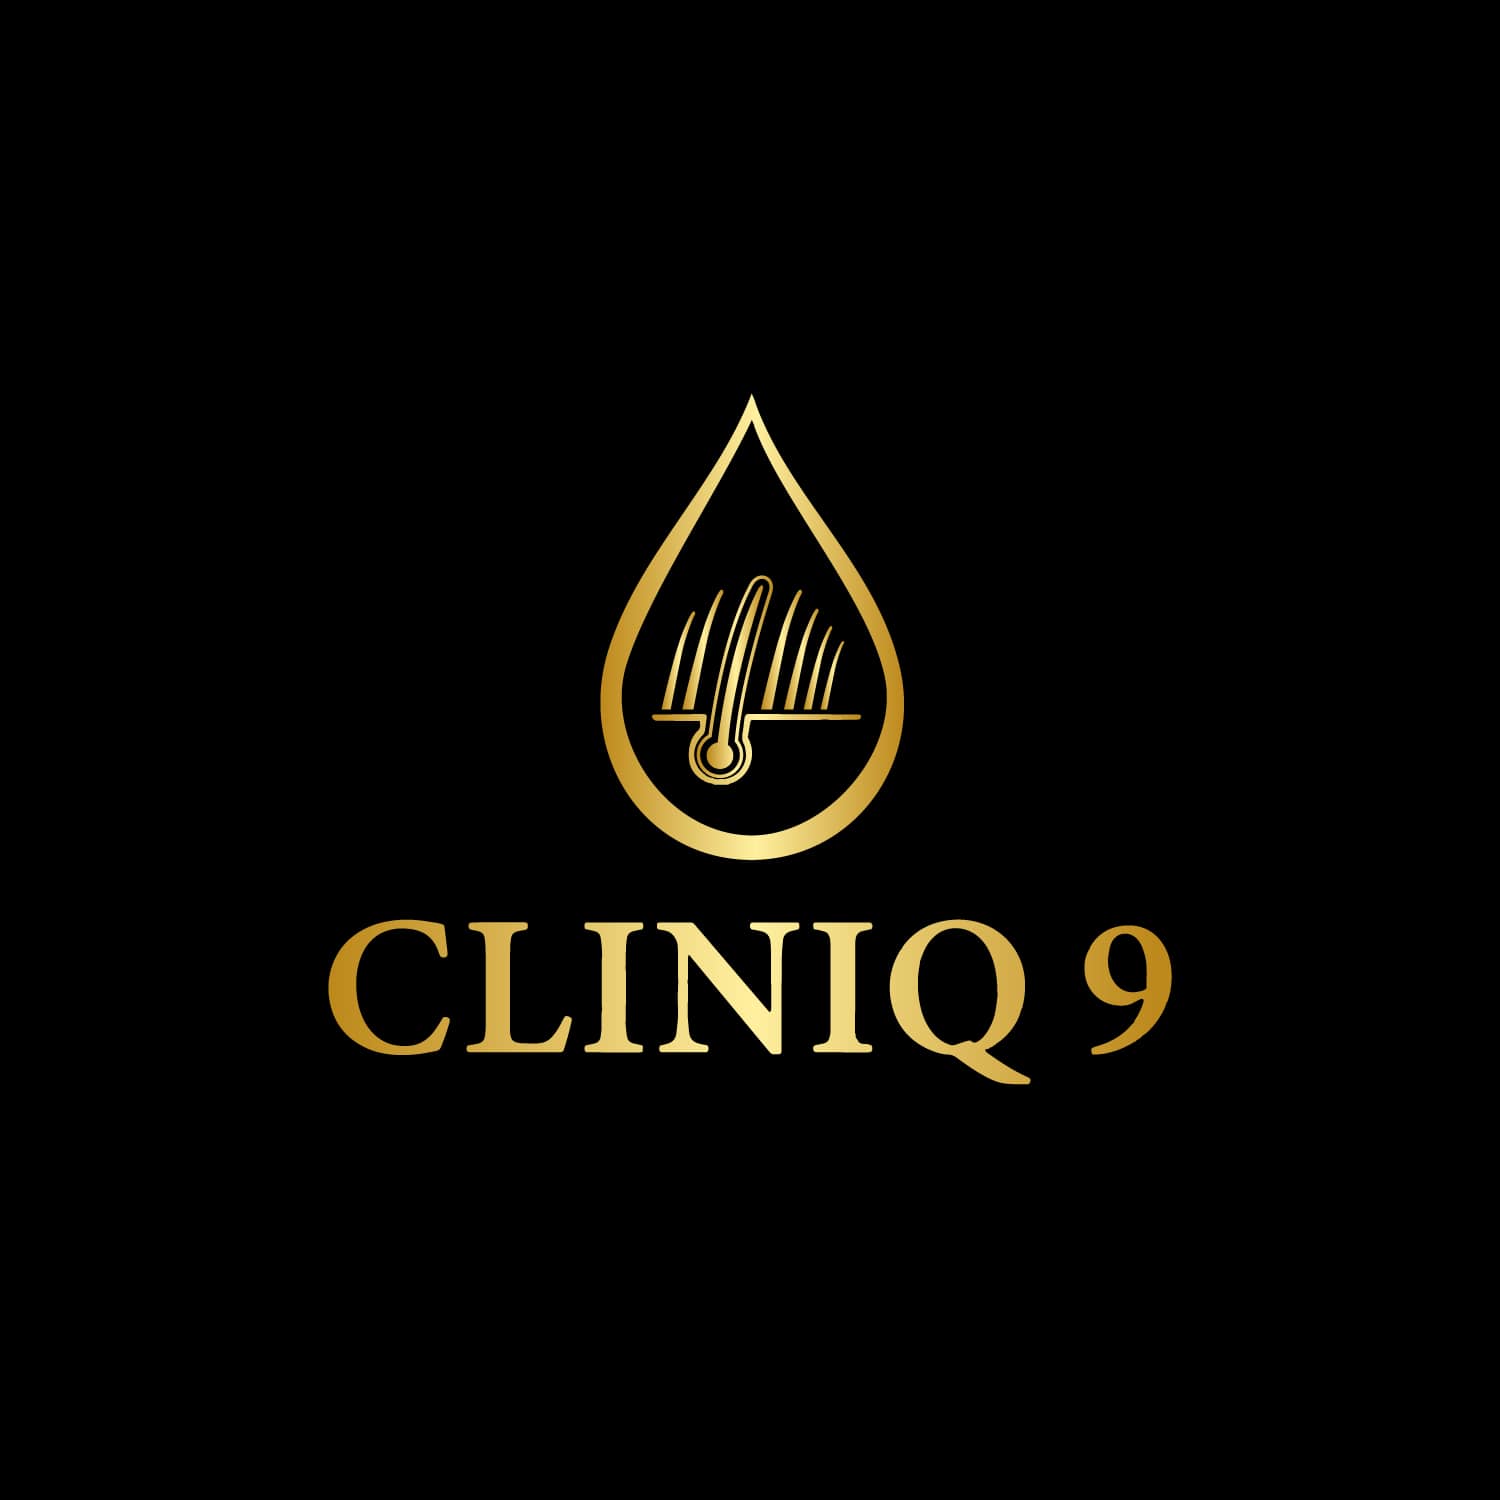 Cliniq 9